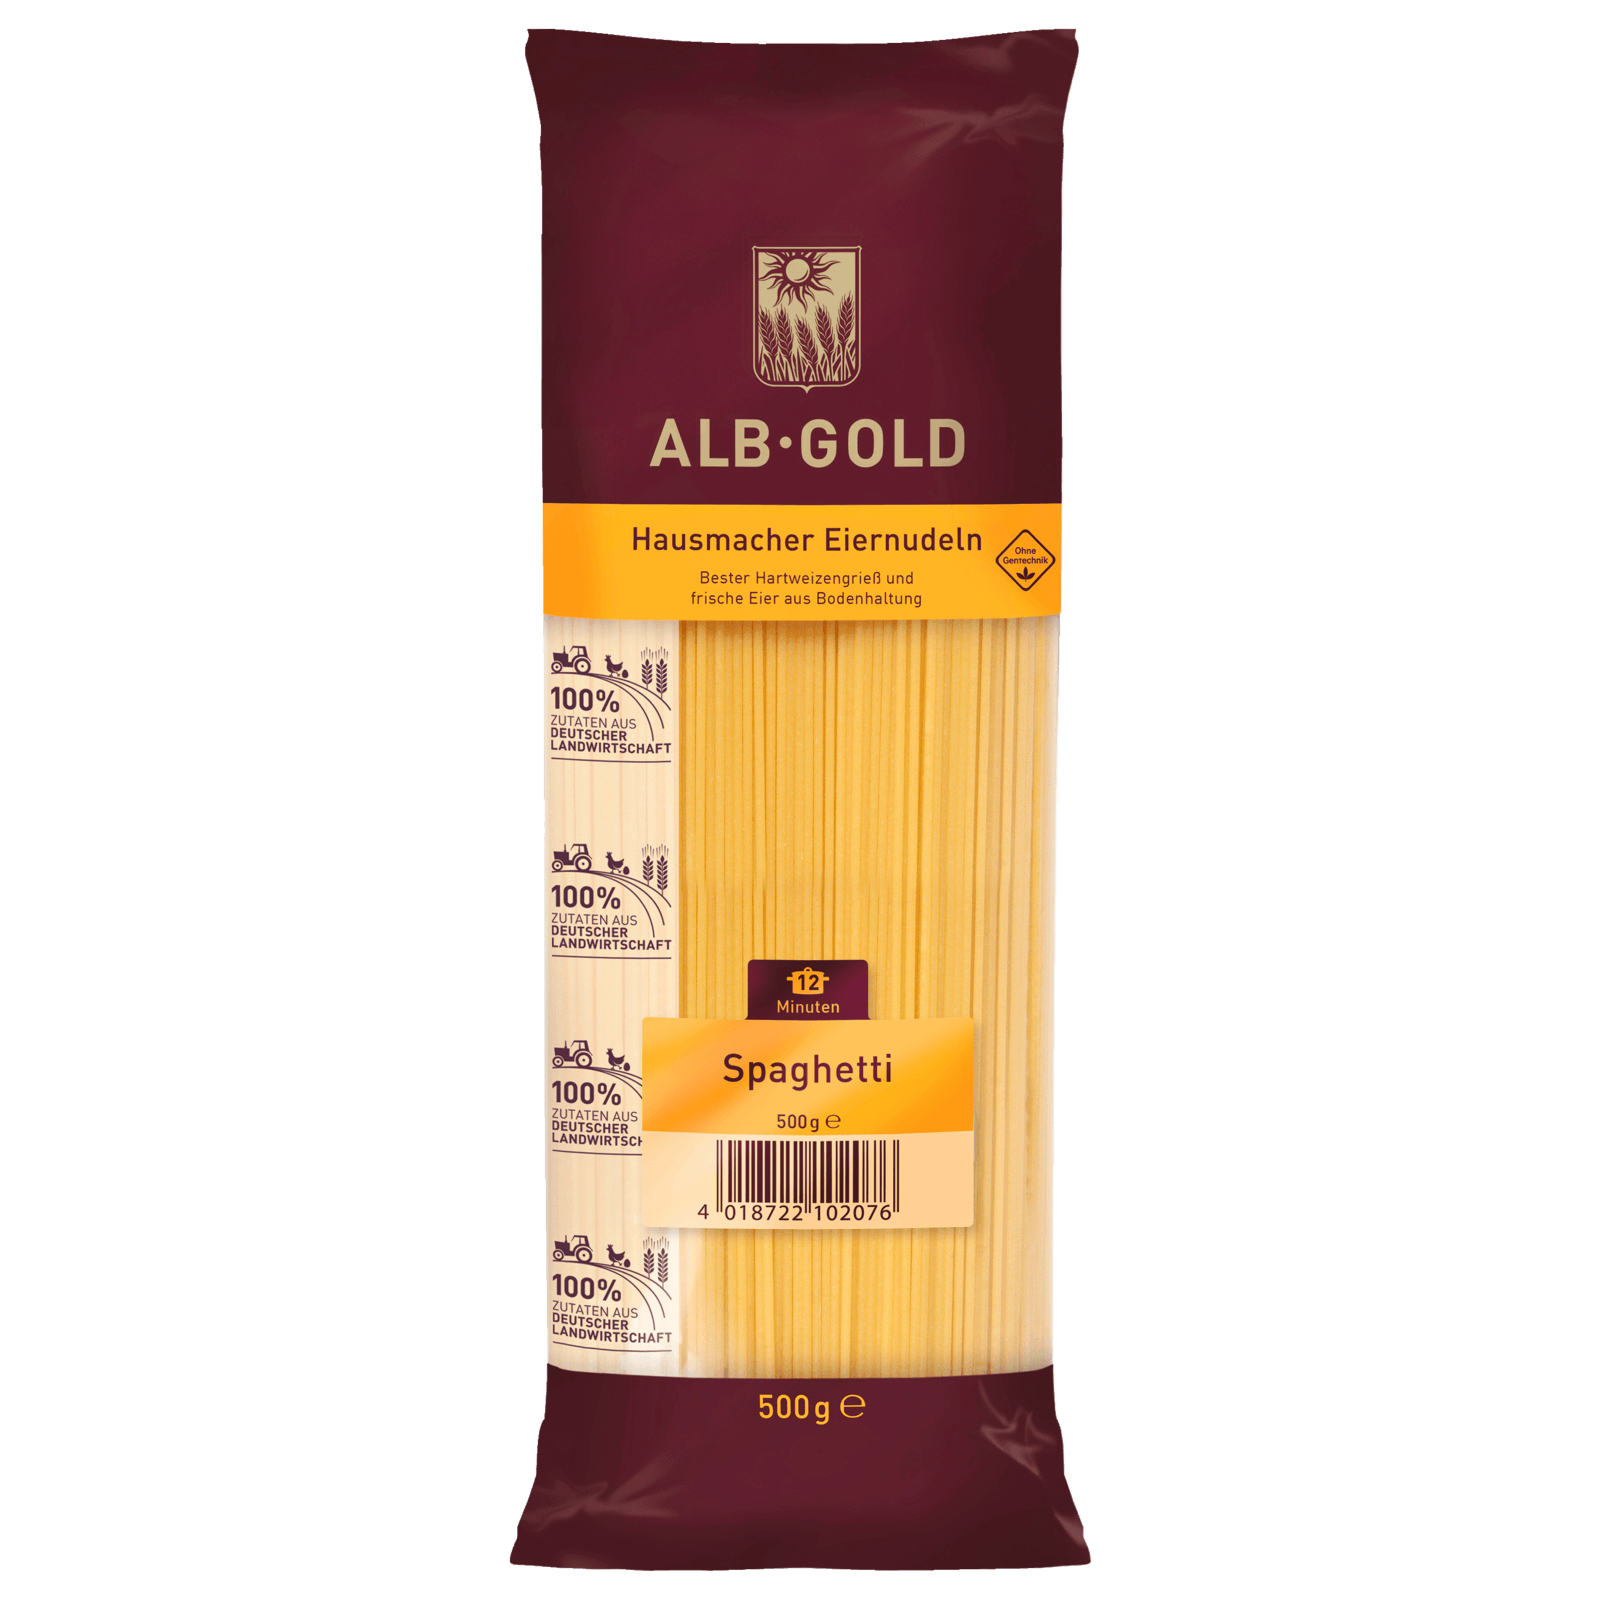 Alb-Gold Spaghetti 500g  für 2.99 EUR